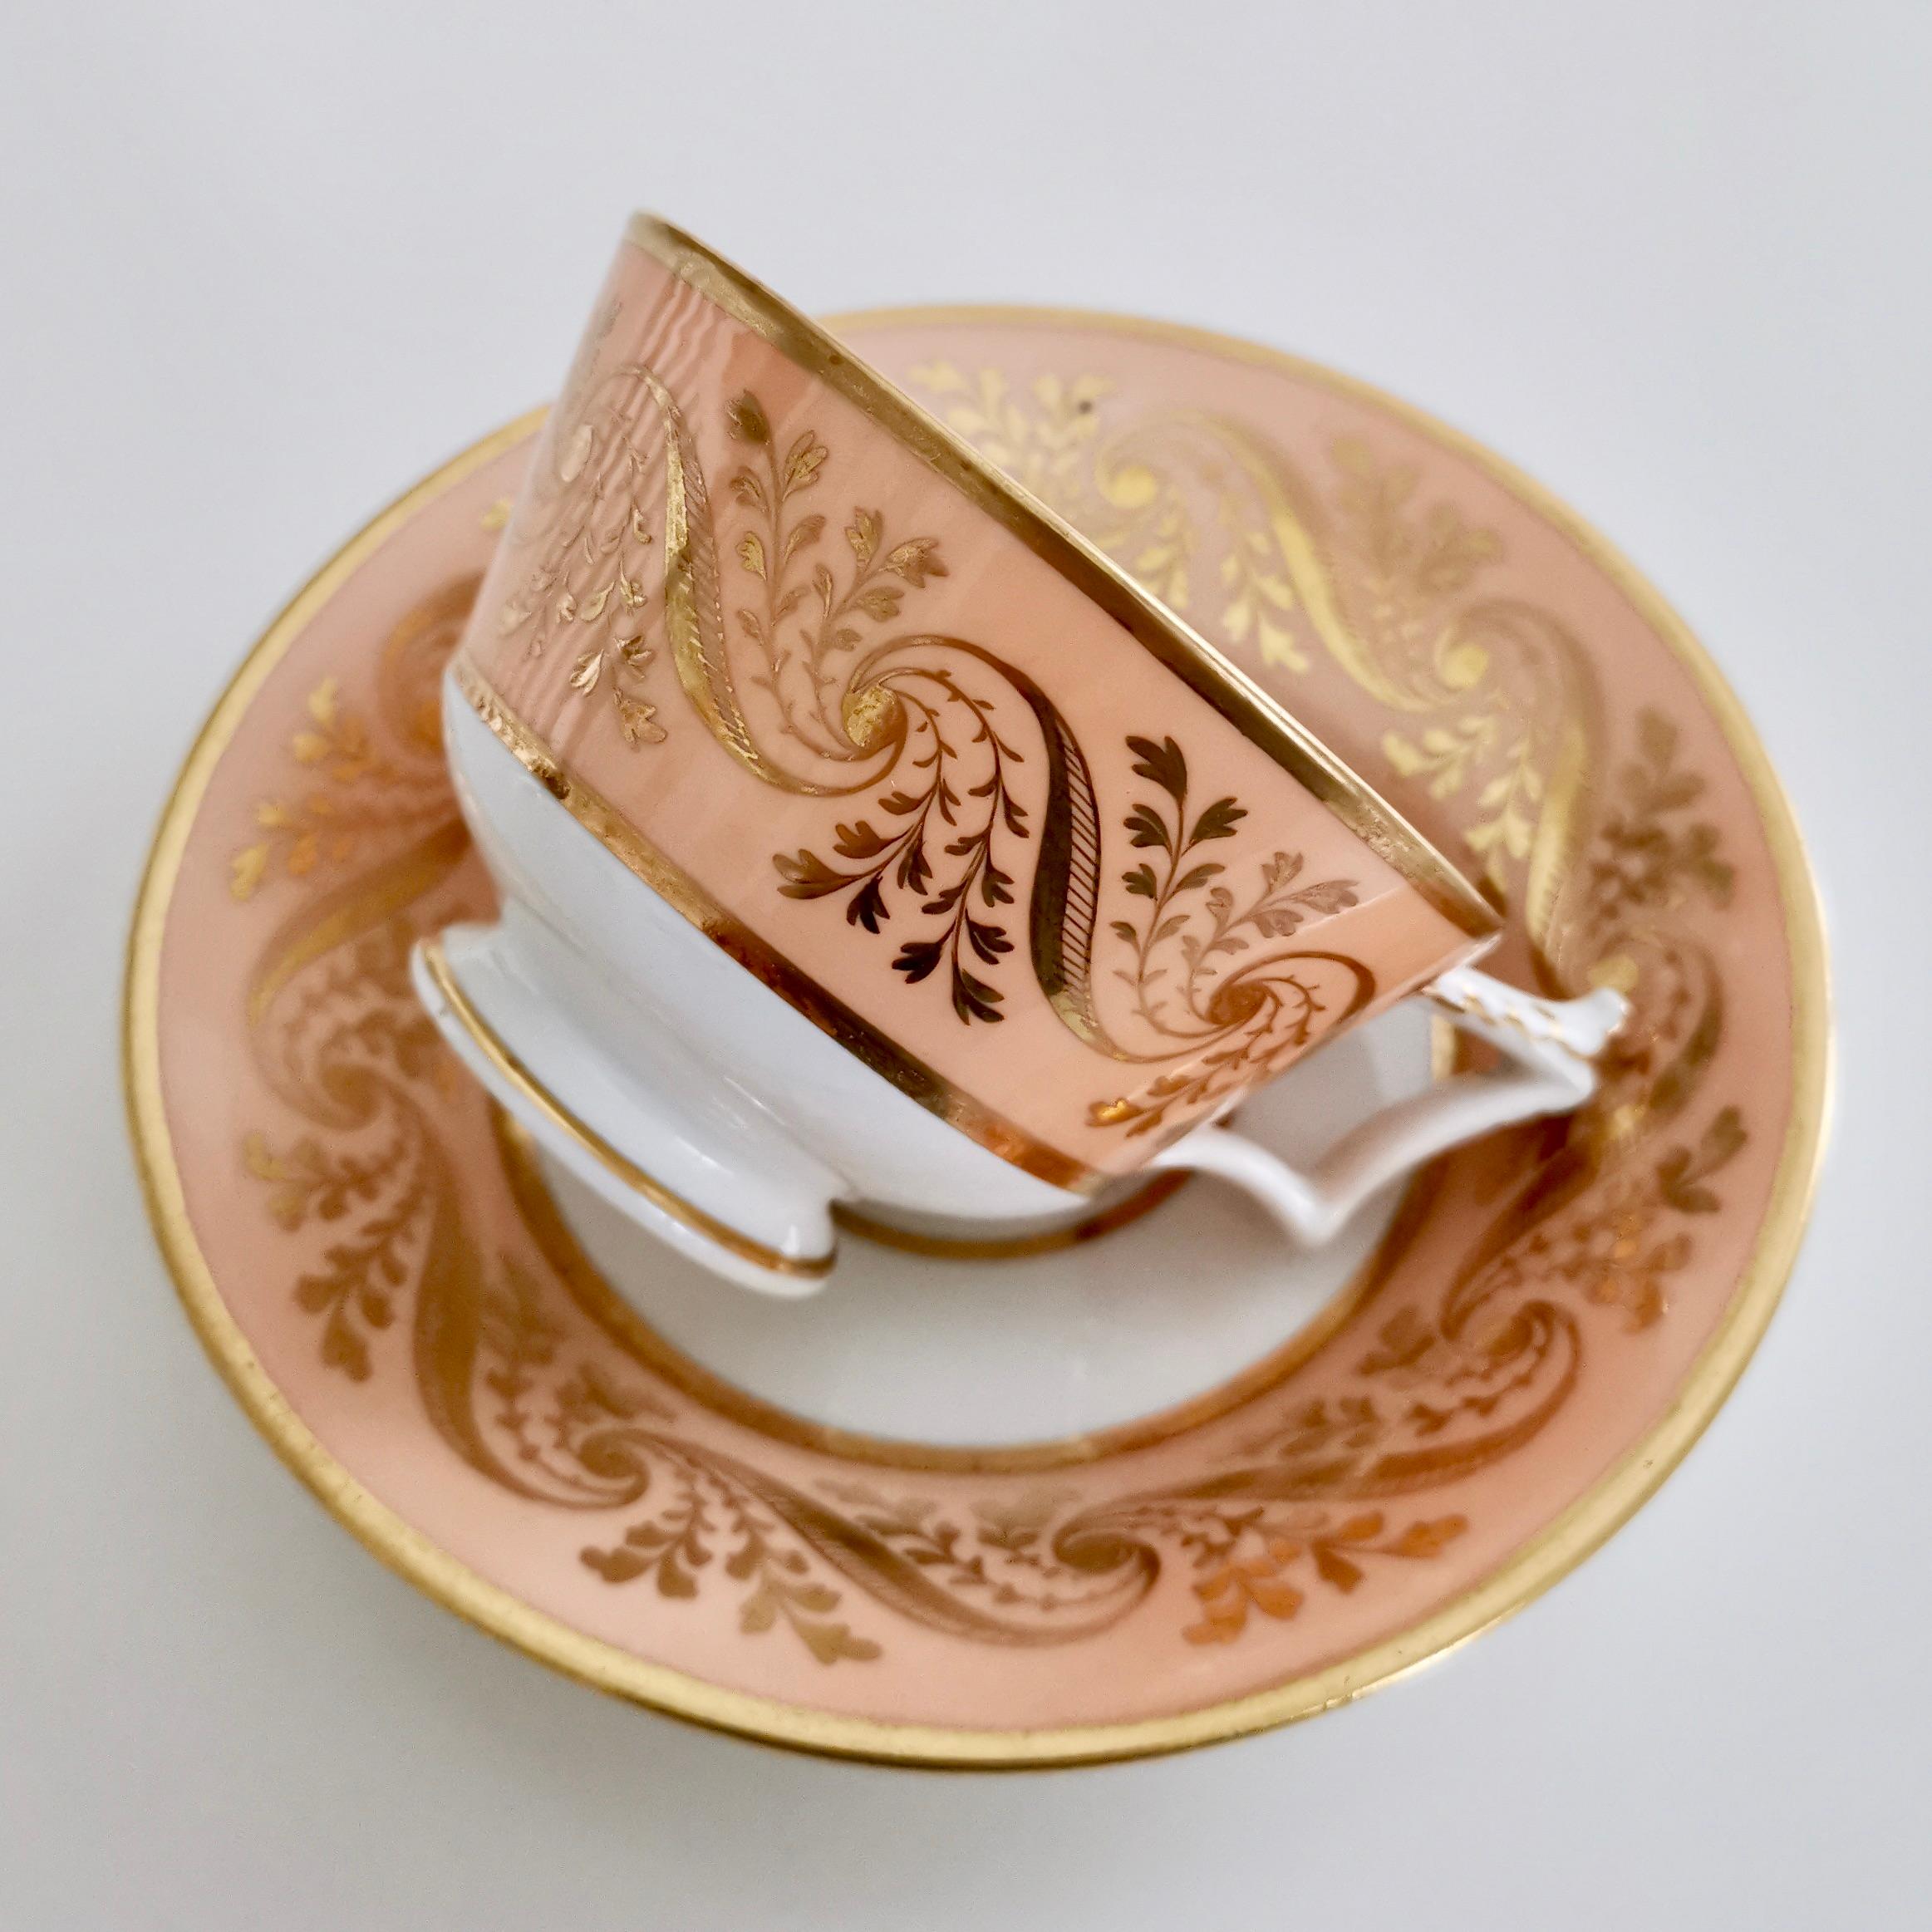 English Flight and Barr Porcelain Teacup, Peach with Gilt, Georgian 1795-1804